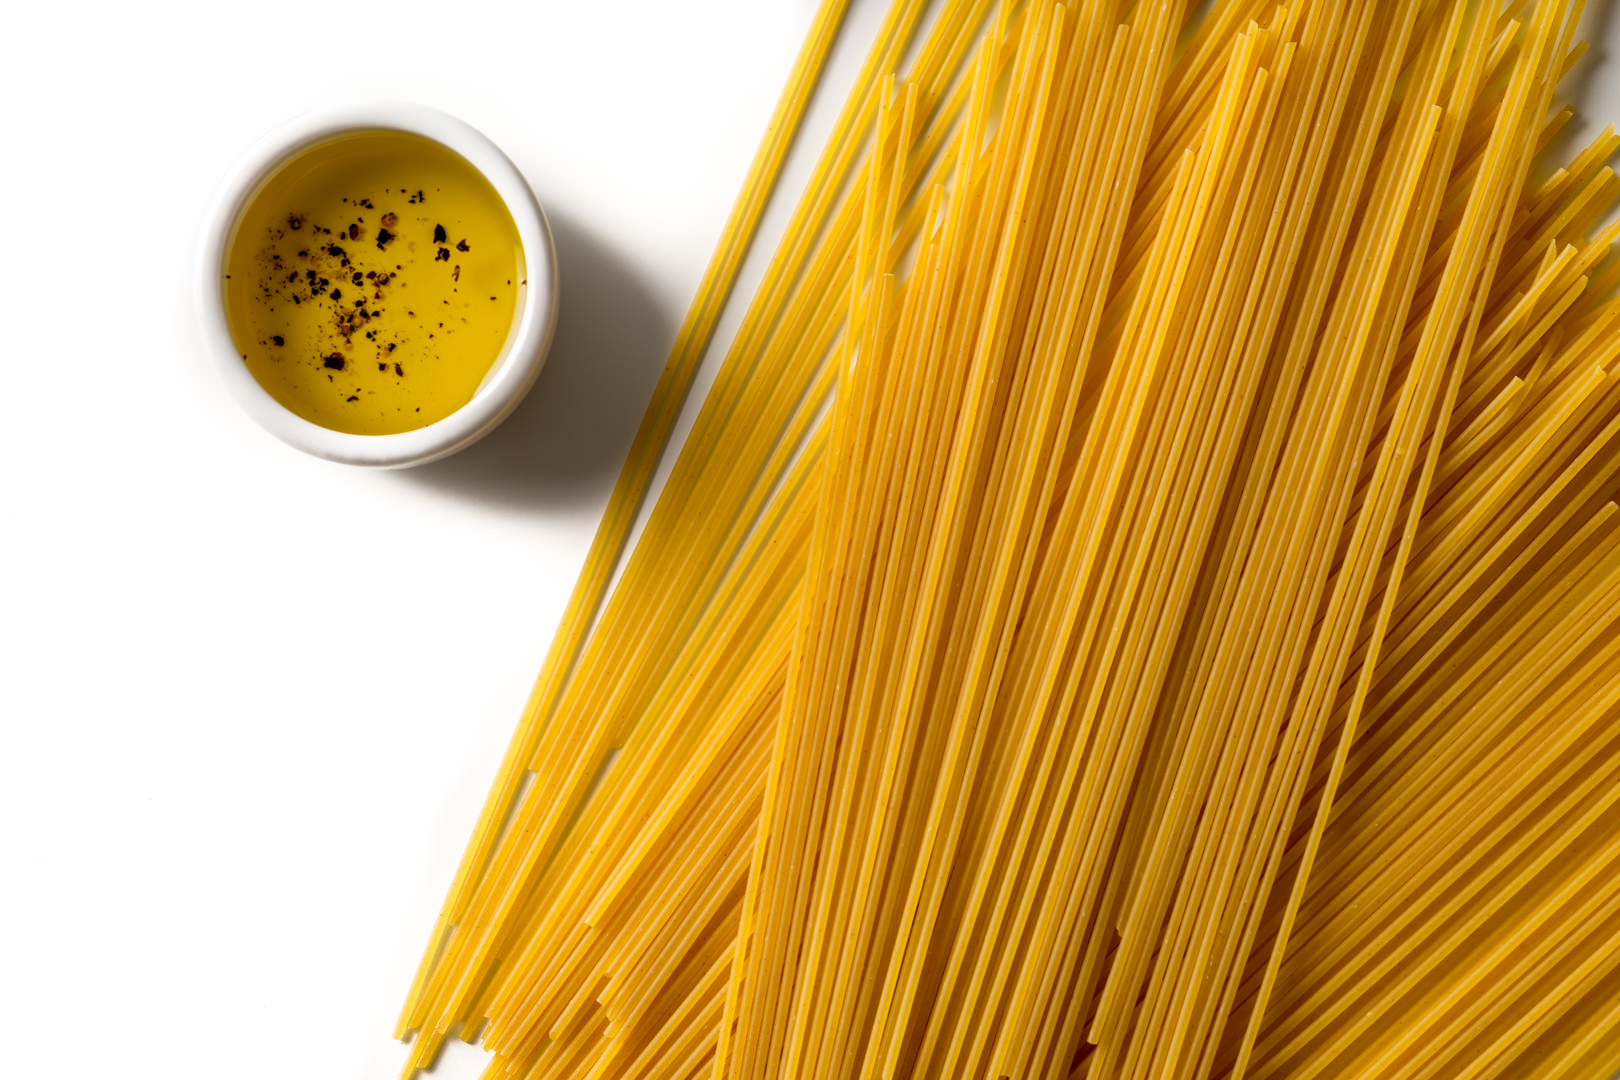 2015-10-08 dry Pasta-860-sRGB-fullsize